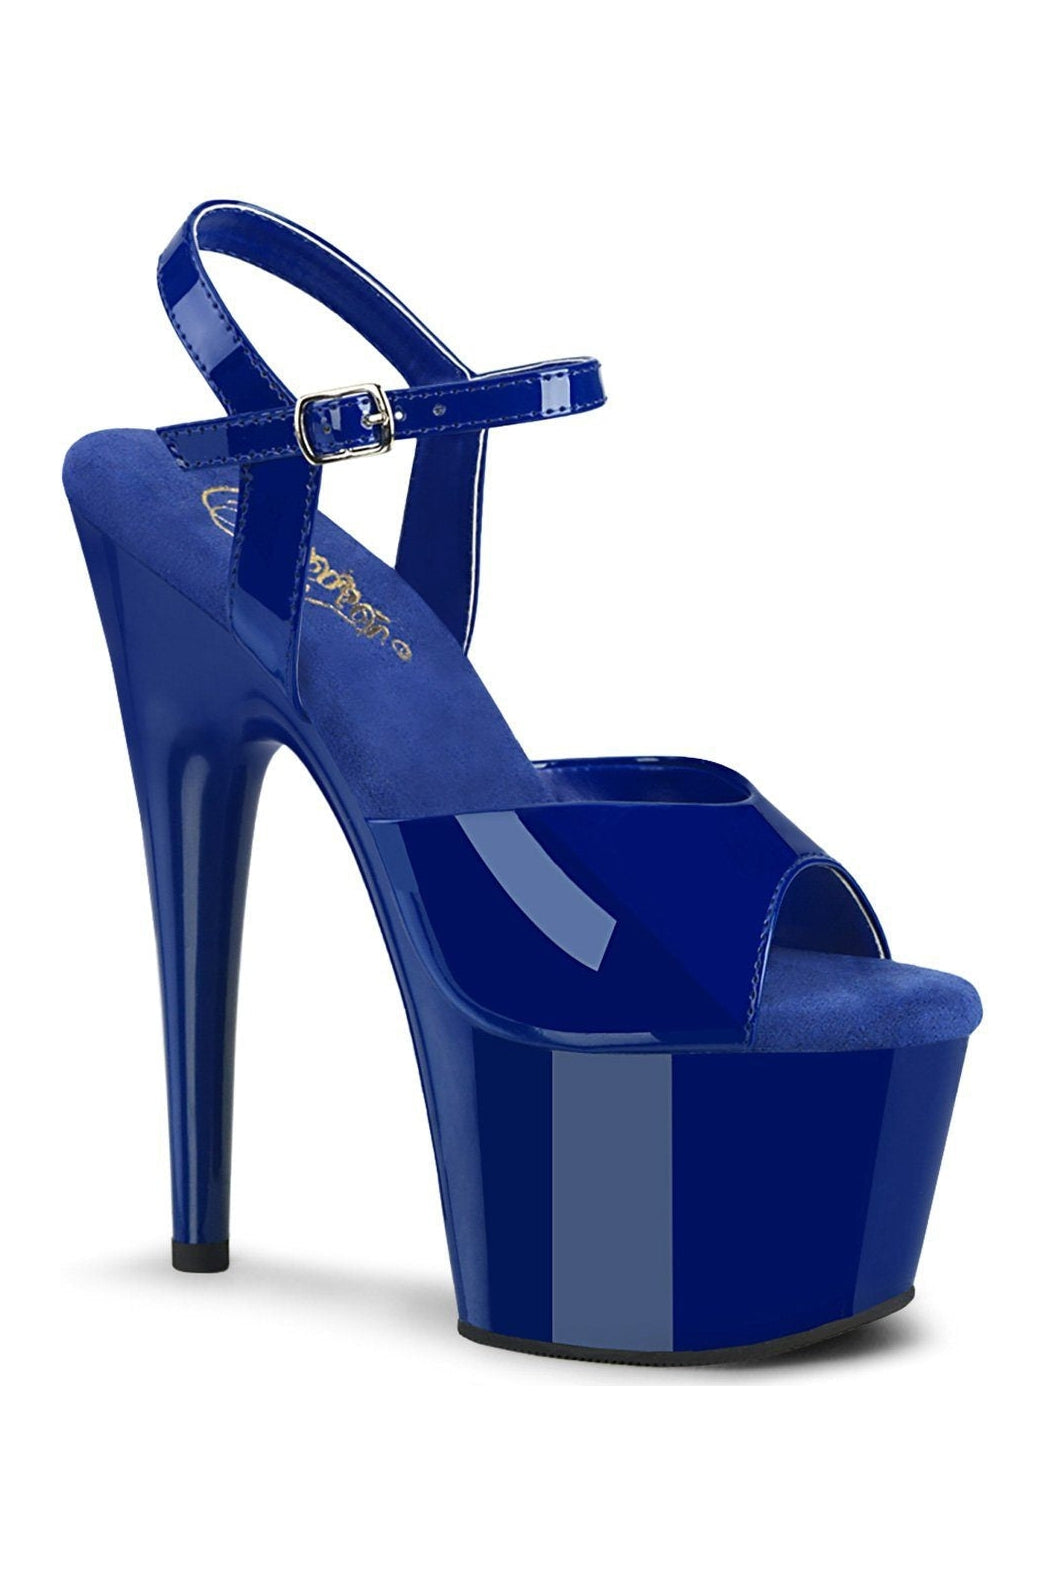 ADORE-709 Sandal | Blue Patent-Sandals-Pleaser-Blue-7-Patent-SEXYSHOES.COM